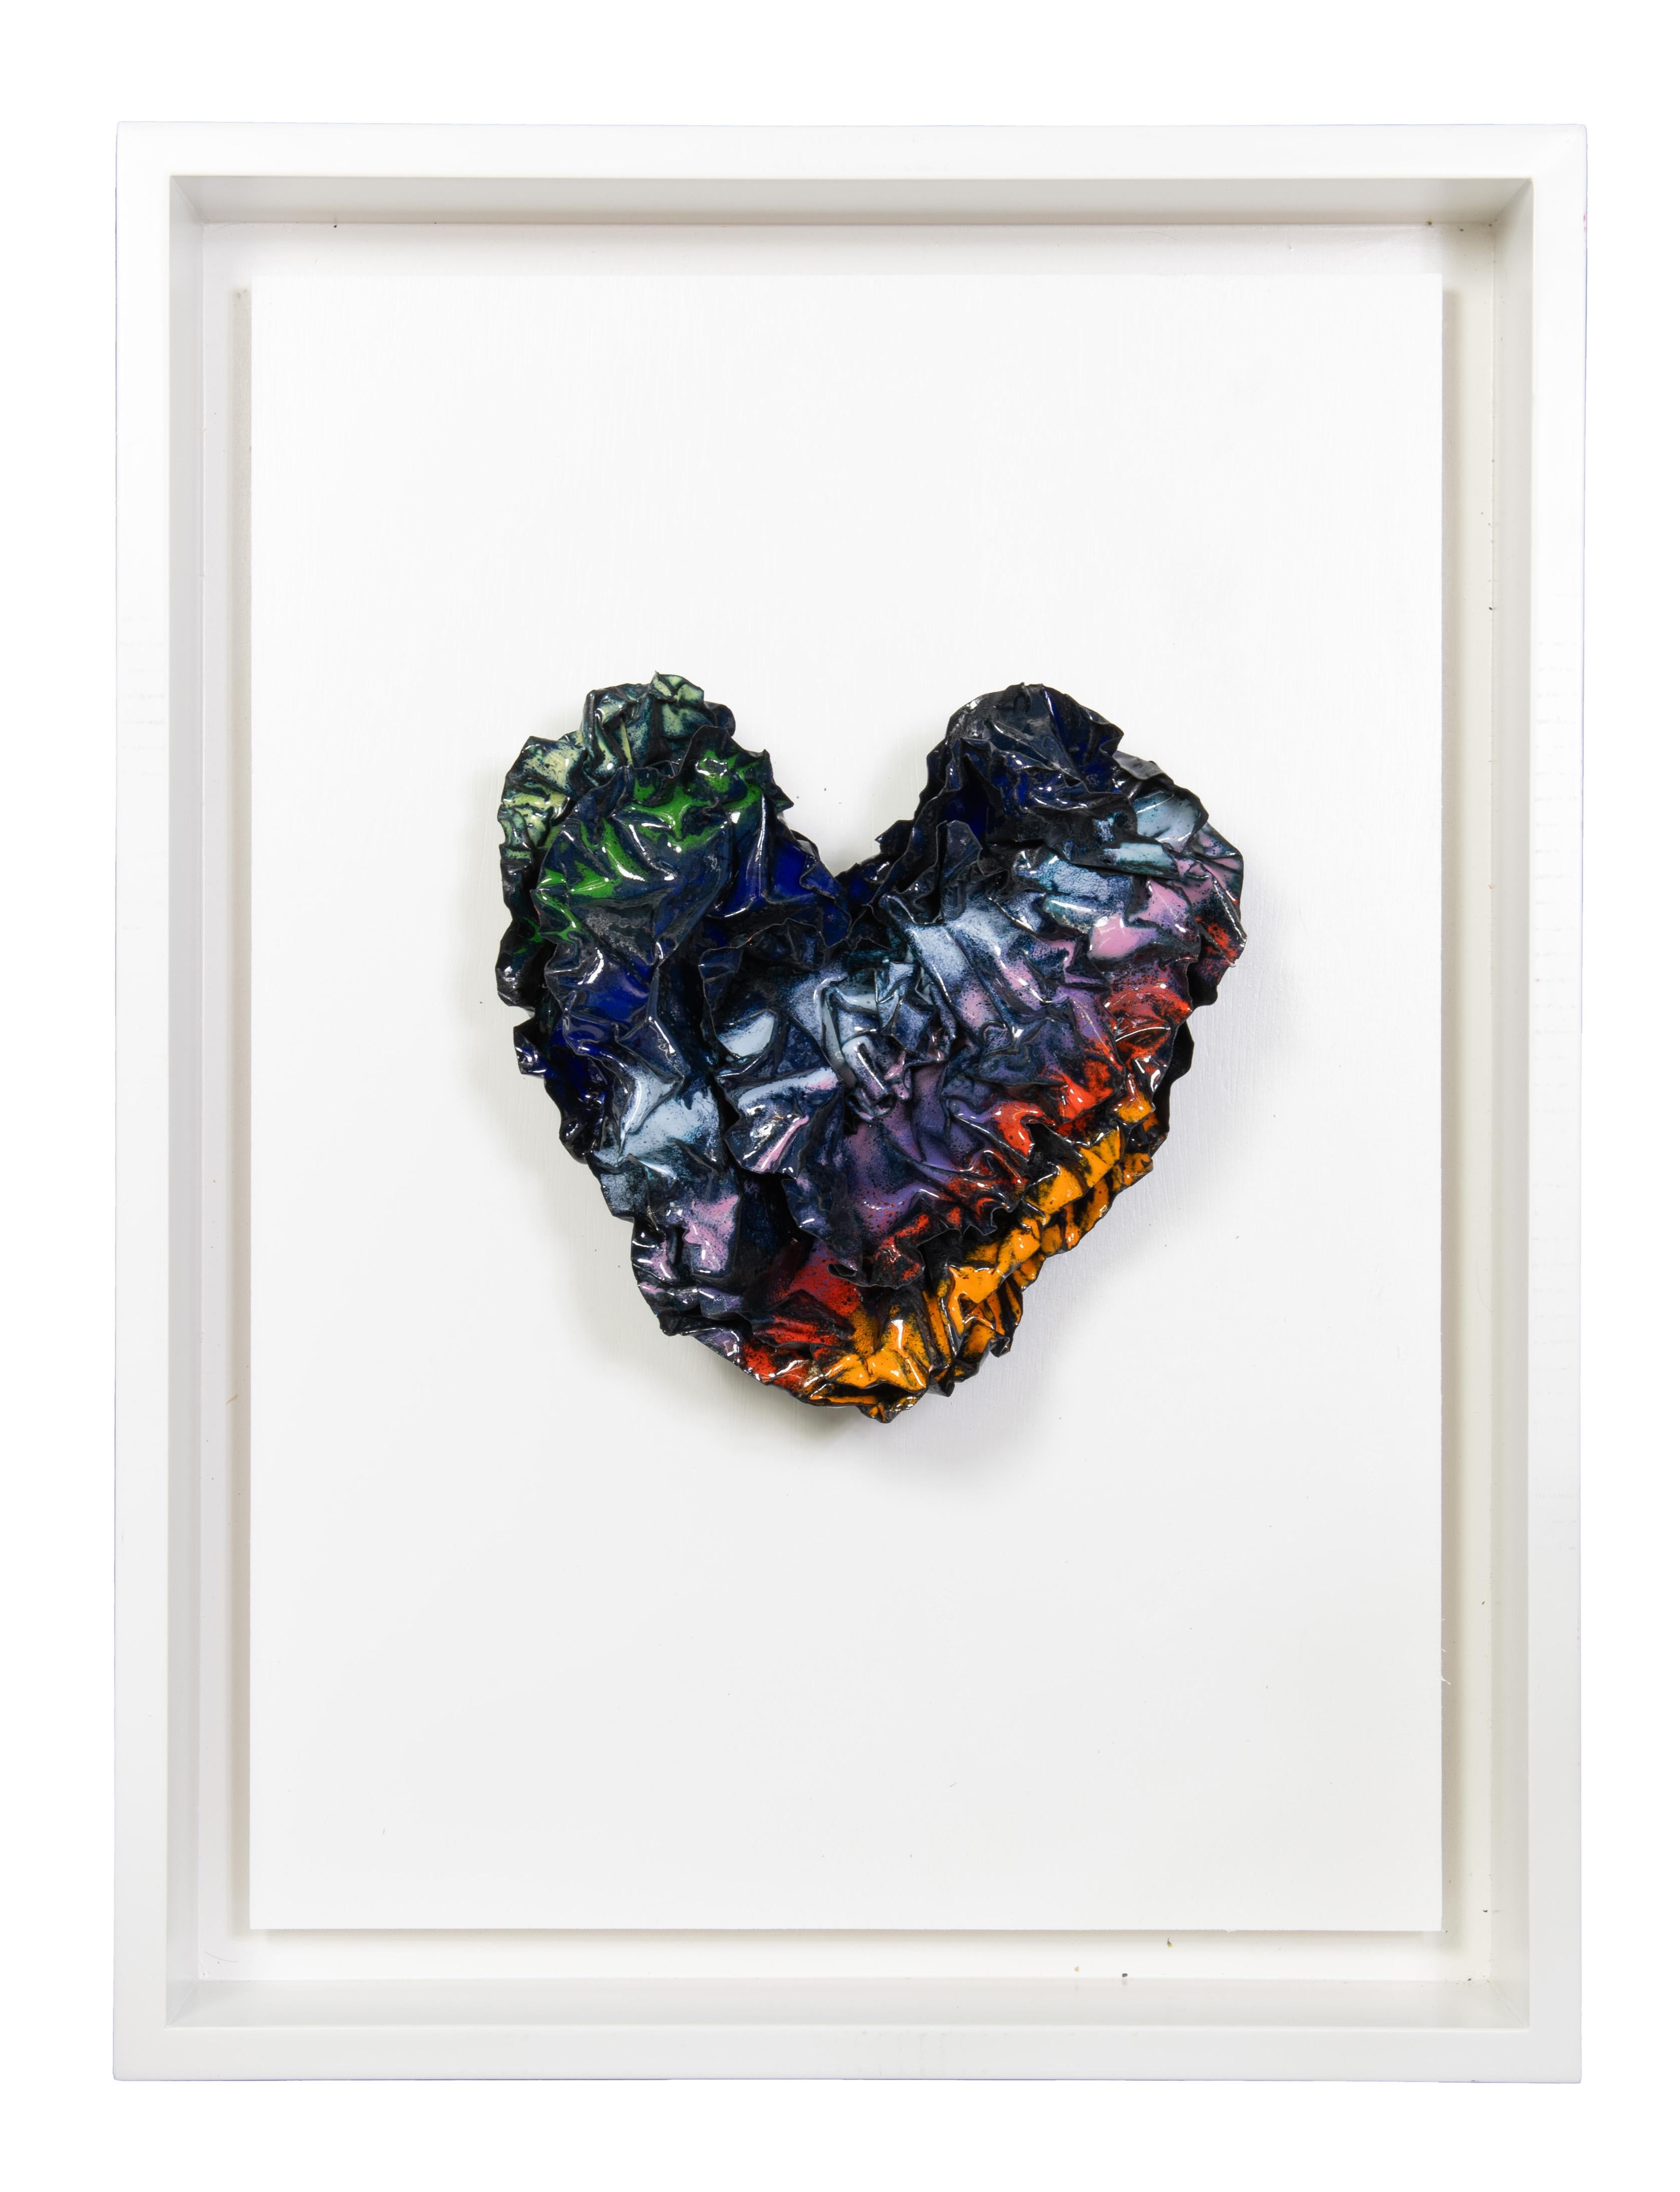 Sherry Been Abstract Sculpture - "Rainbow Heart" Abstract Wall Art Sculpture, 2023